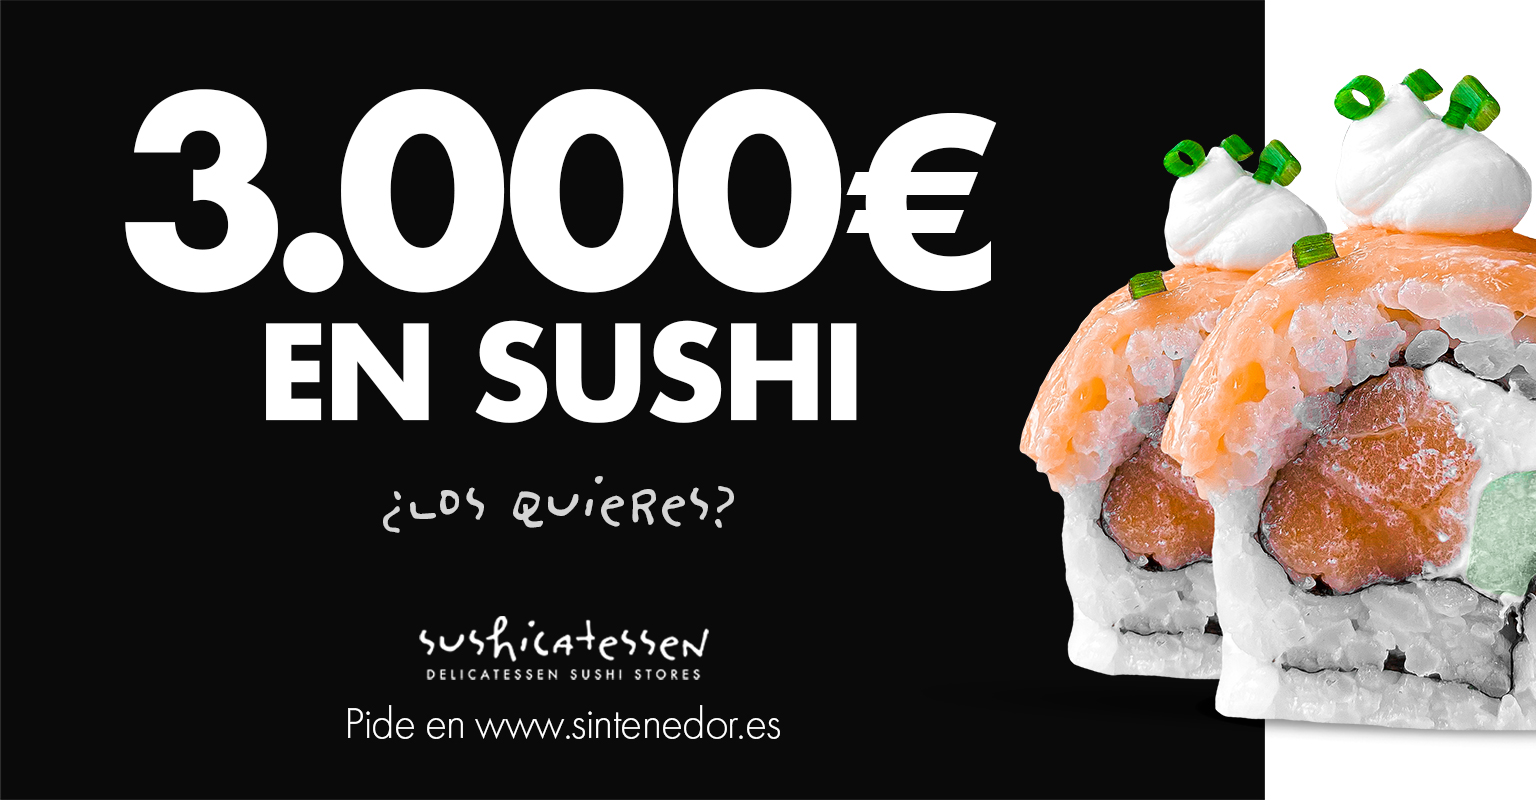 Sushicatessen regala 3.000€ en sushi